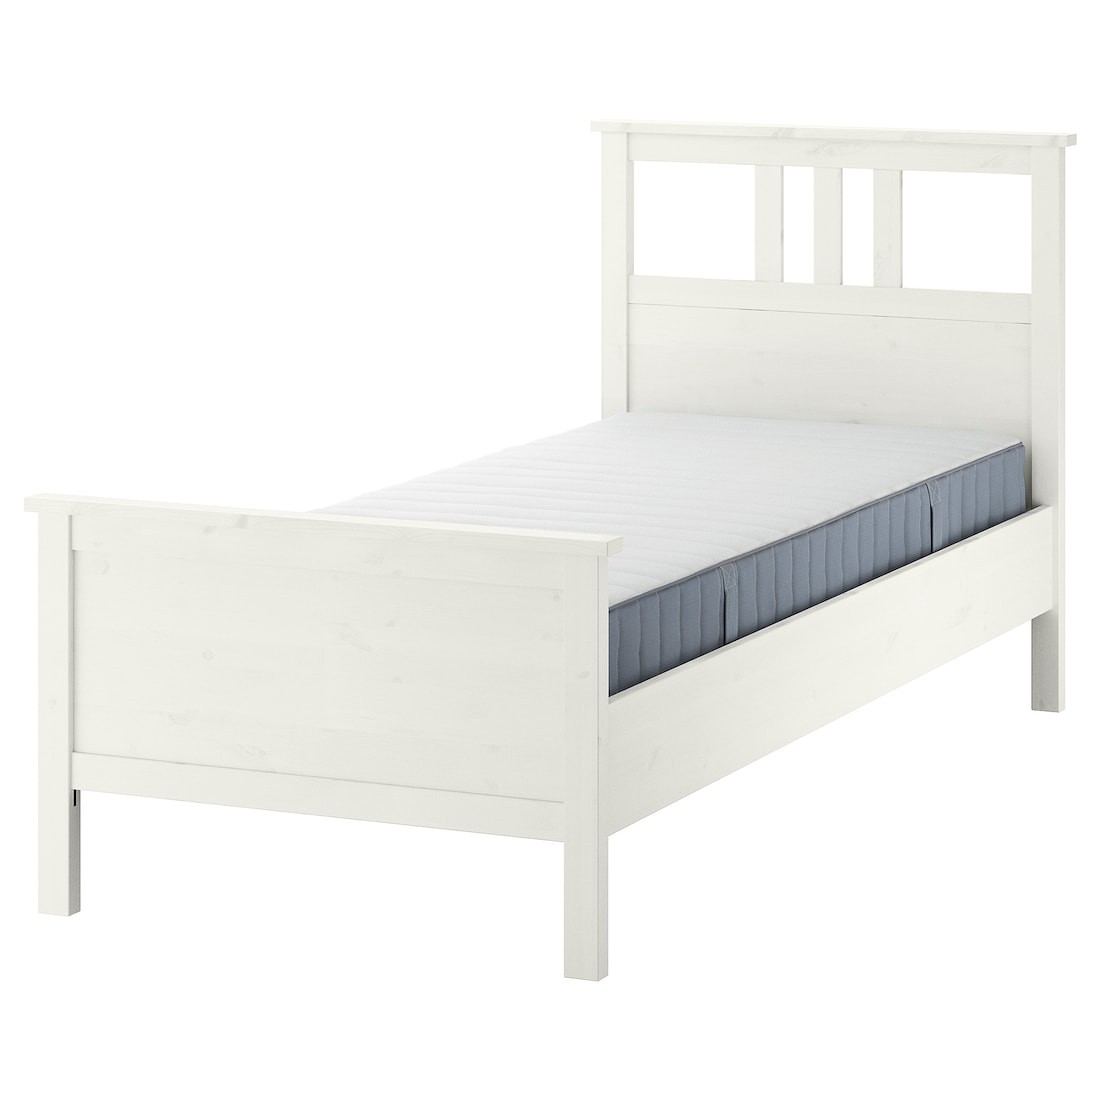 HEMNES Кровать с матрасом, белая морилка / Valevåg средней жесткости, 90x200 см